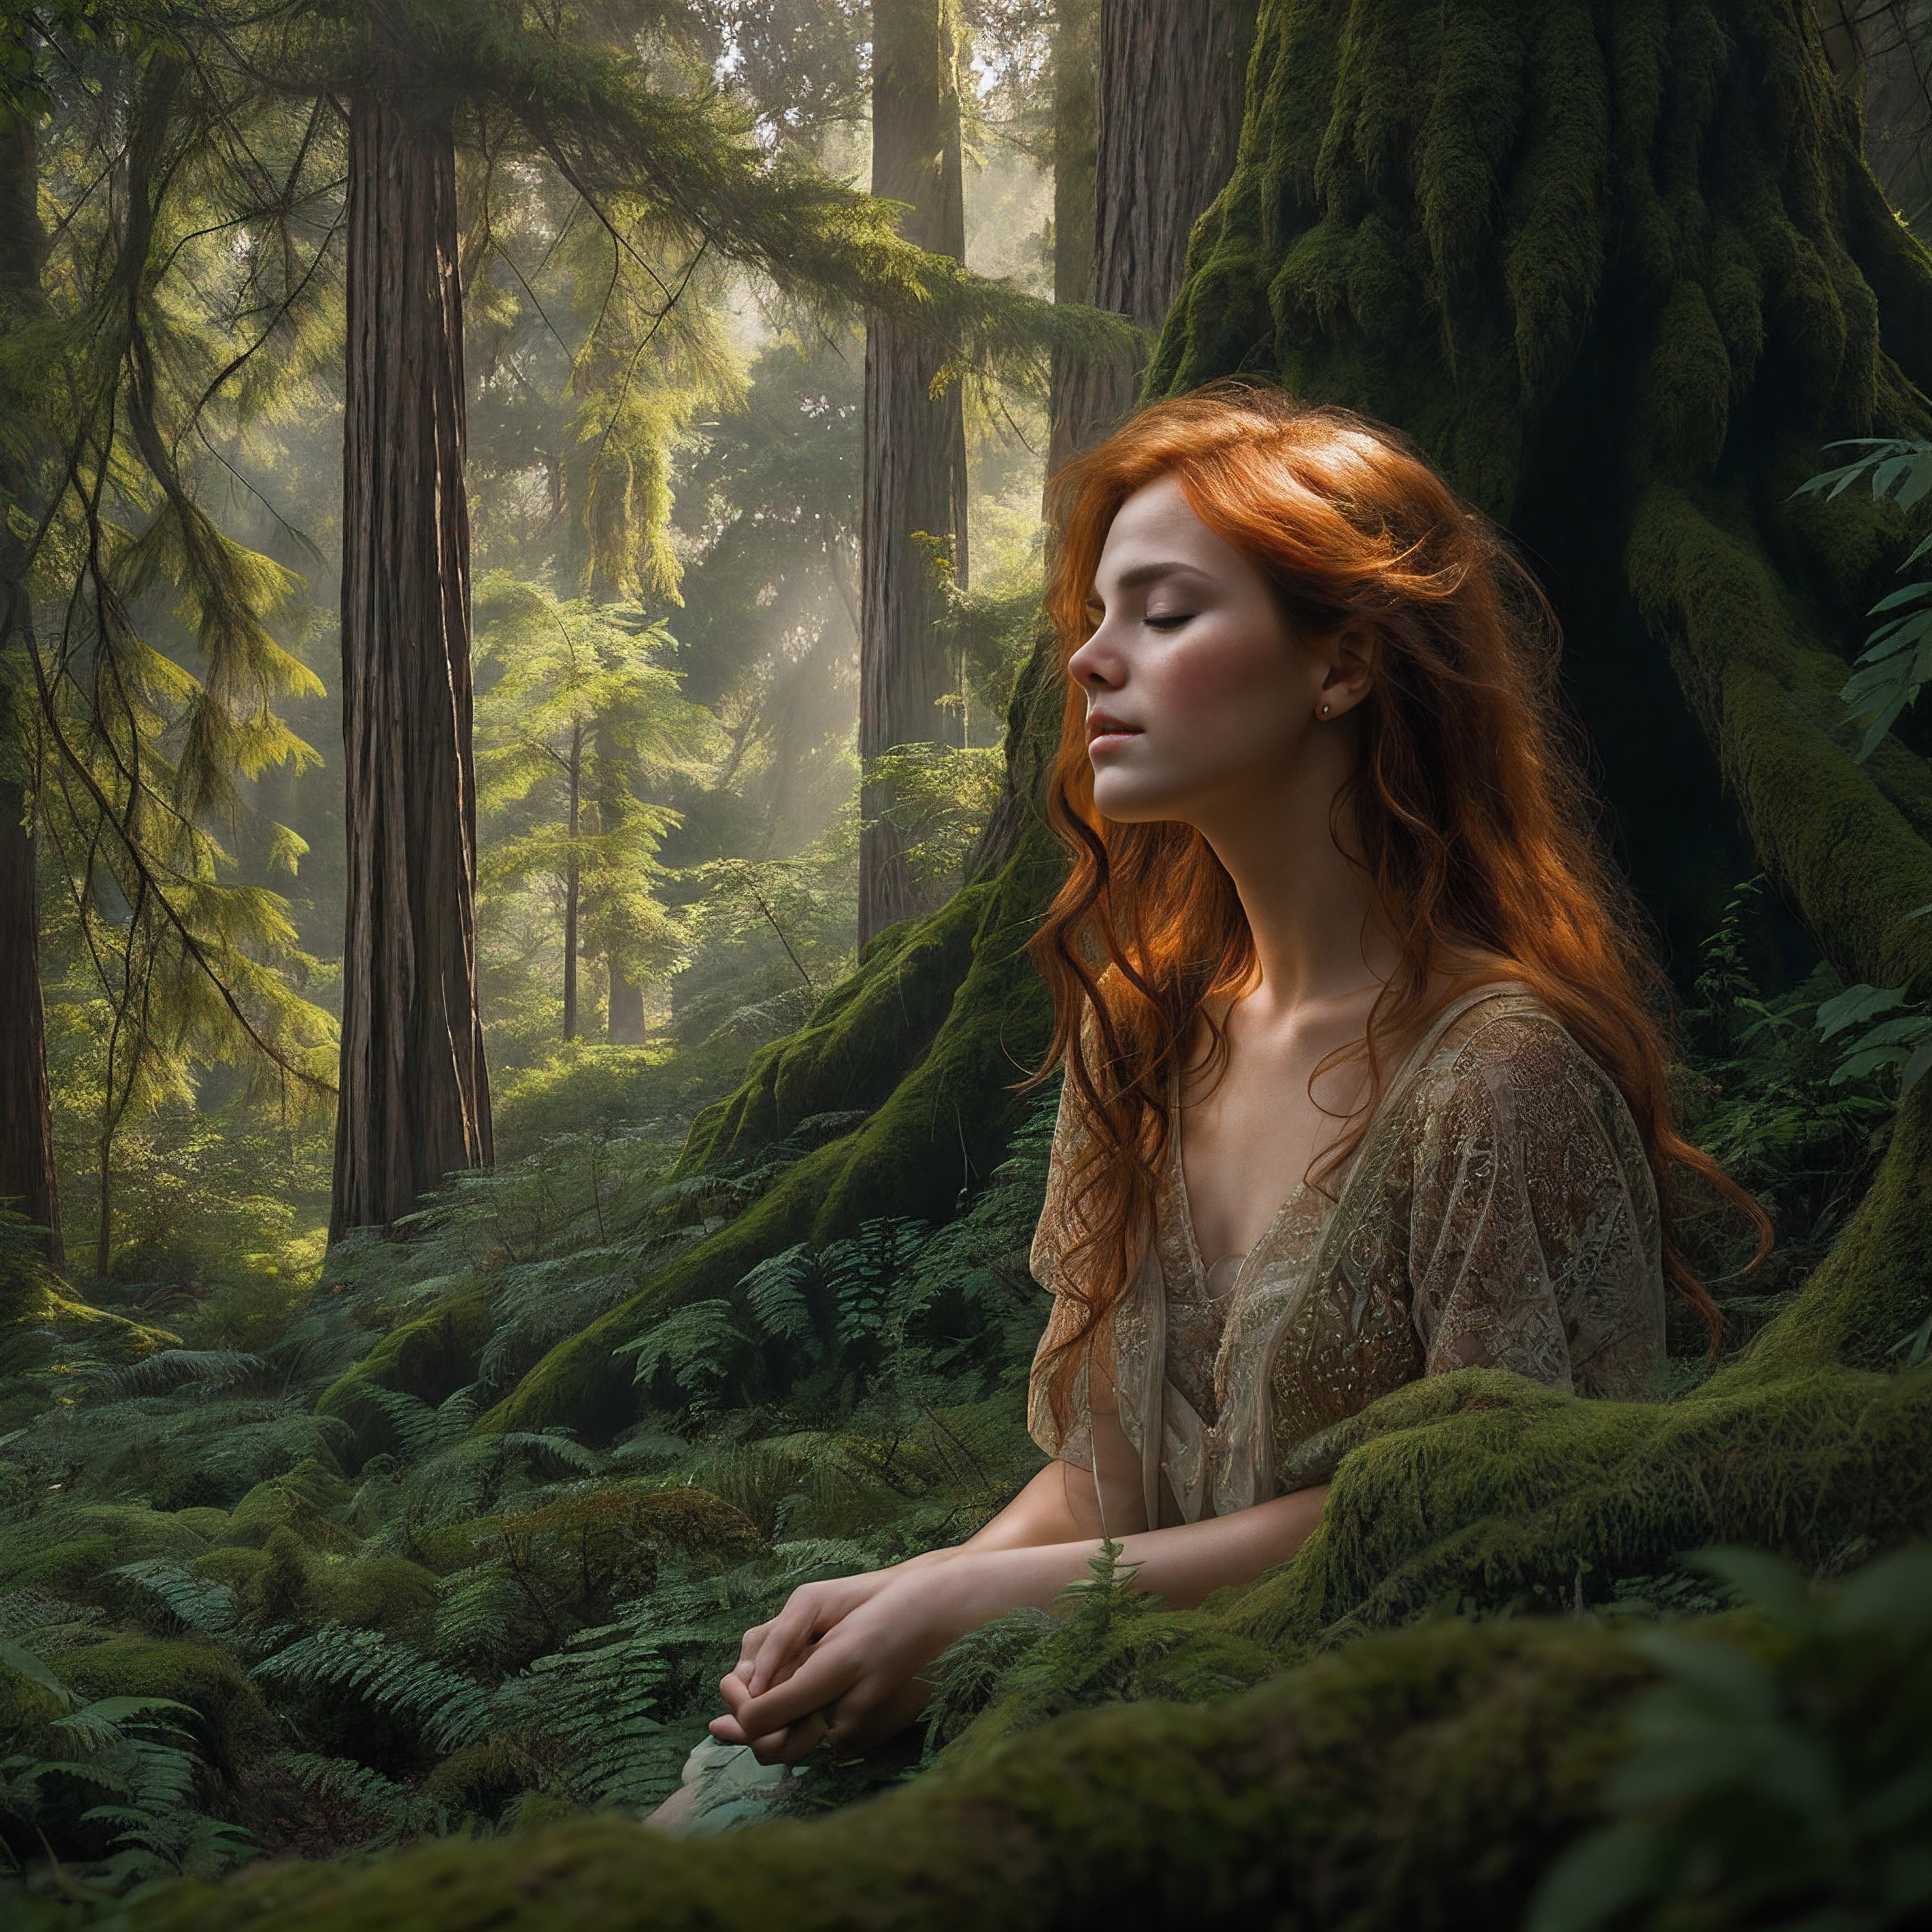 高くそびえる古代のセコイアの木々に囲まれた緑豊かな隠れた空き地で静かにひざまずく美しい赤毛の女性を描いた絶妙な肖像画, 頭上の高くそびえる樹冠の間から降り注ぐ太陽の光を眺めながら、物思いにふけりながら目を閉じている, 森の光に照らされた繊細な顔立ち, 森の床を覆う鮮やかなエメラルド色の苔に映える、愛らしいそばかすで飾られた完璧な肌, 雨と杉の土っぽい香りを運ぶ穏やかな森のそよ風に、燃えるような髪がそっと揺れる, 芸術写真プリントのスタイルで巧みに構成されている, 映画の静止画のように、音色が豊かで雰囲気のある, 複雑なテクスチャとフィルム粒子がシームレスに統合され、この原始の森の聖域の奥深い美しさを捉えています。, 細部にまで細心の注意を払って、全体的に見事な職人技で仕上げられています, この見事なデジタル絵画は、フォトリアリズムと想像力豊かな芸術性が融合した典型である。.